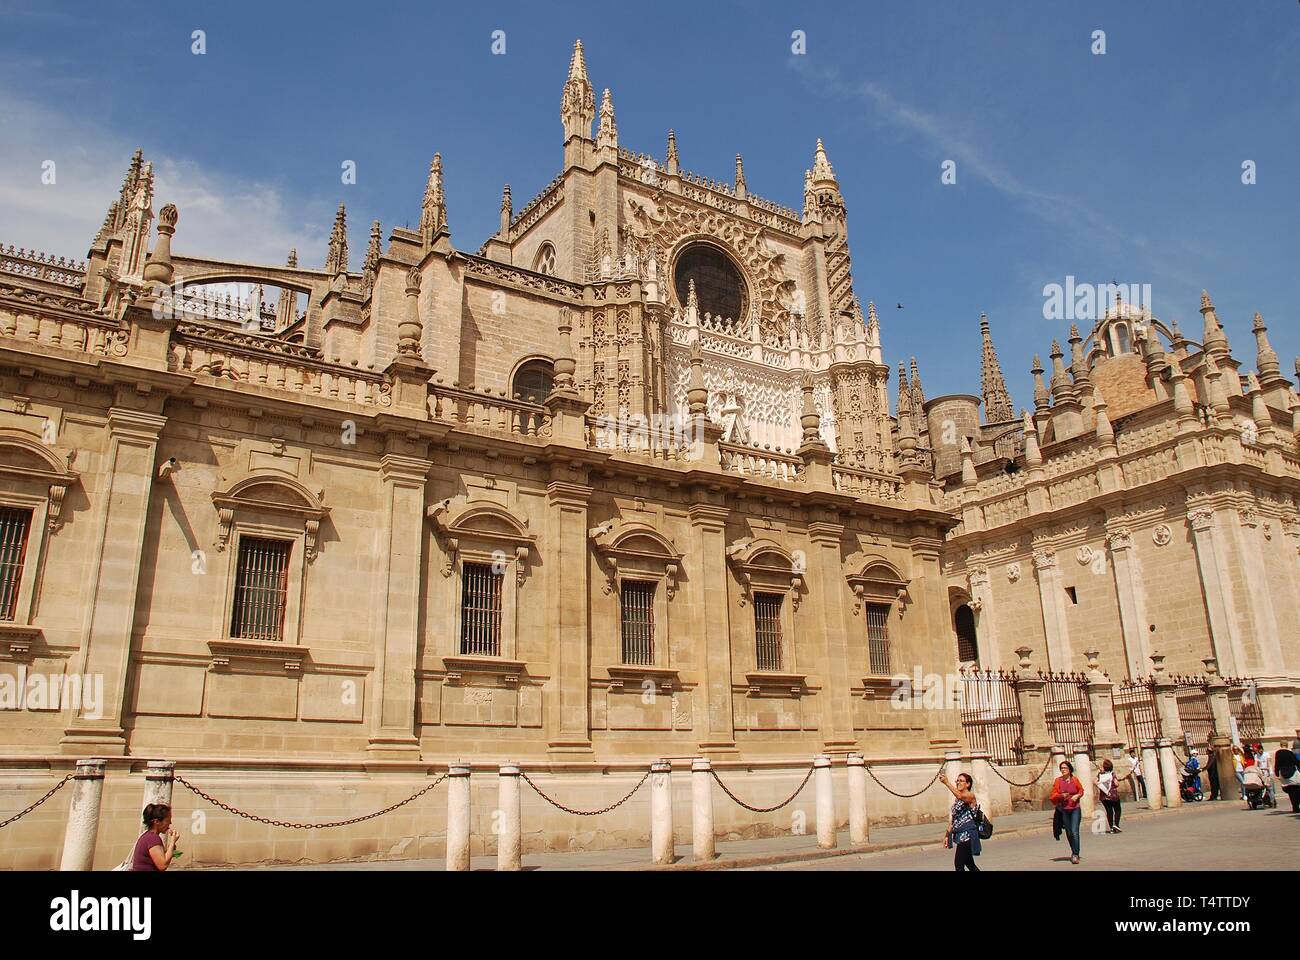 La cathédrale de Santa Maria de la Sede à Séville, Espagne, le 2 avril 2019. Commencé en 1402, c'est la plus grande cathédrale gothique du monde. Banque D'Images